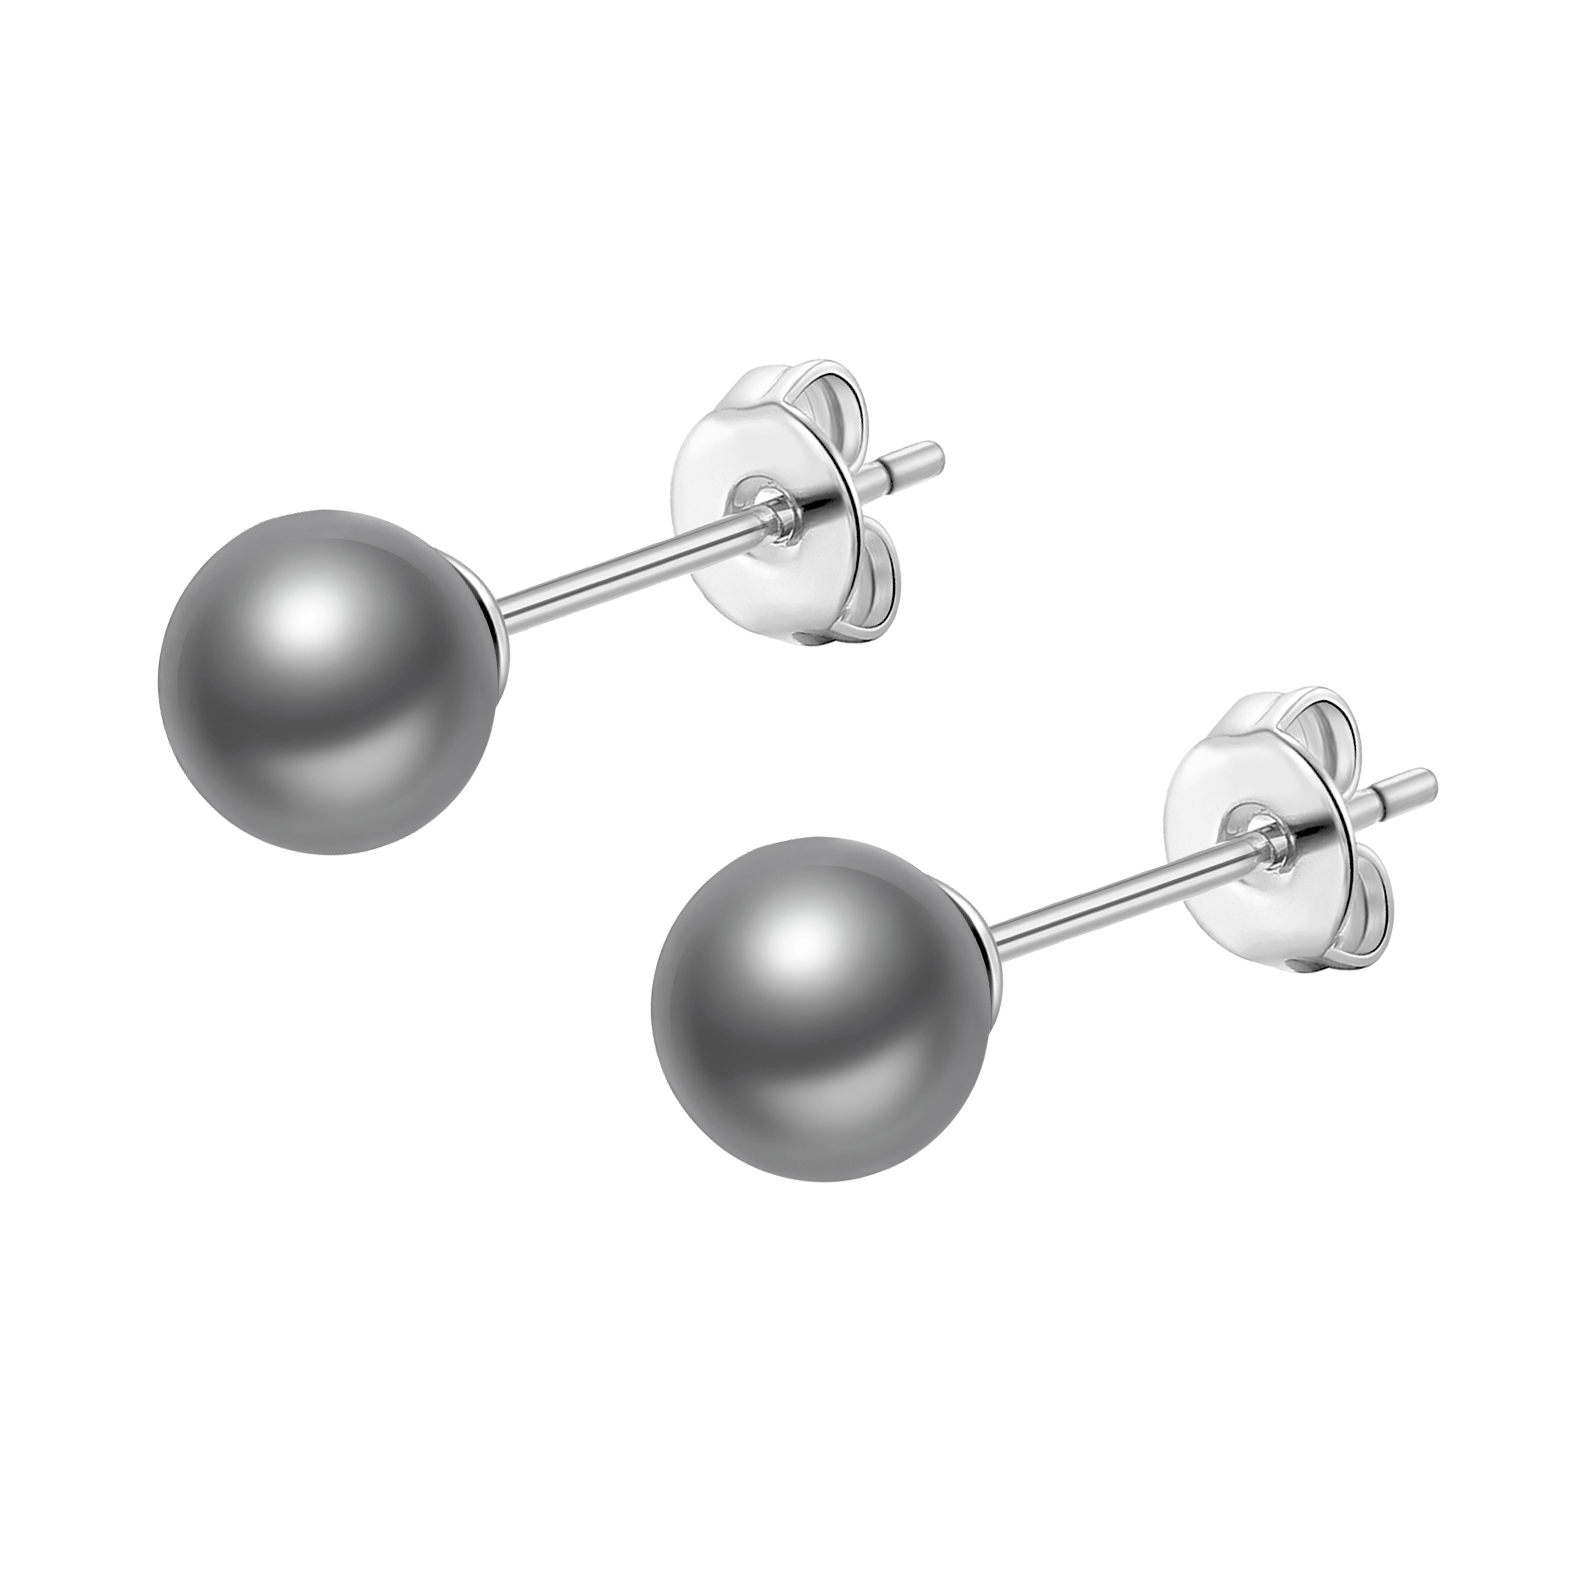 Grey Shell Pearl Earrings by Philip Jones Jewellery